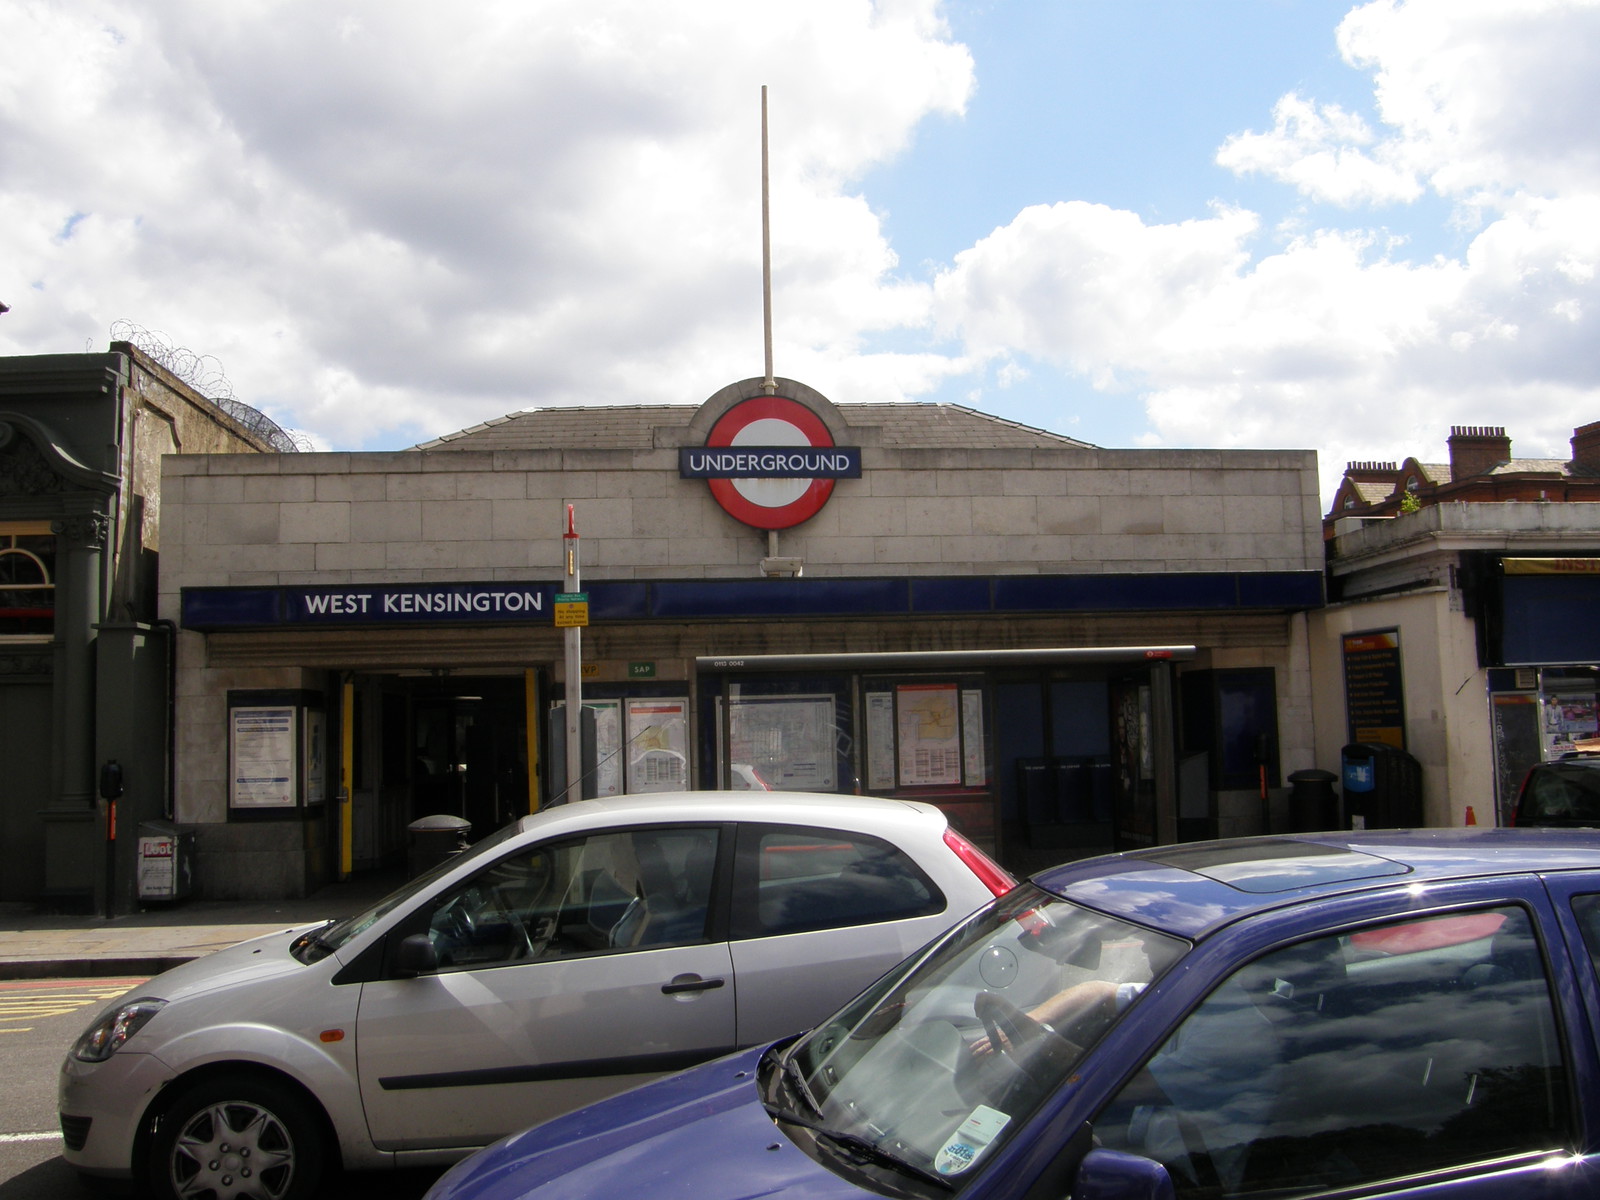 West Kensington station